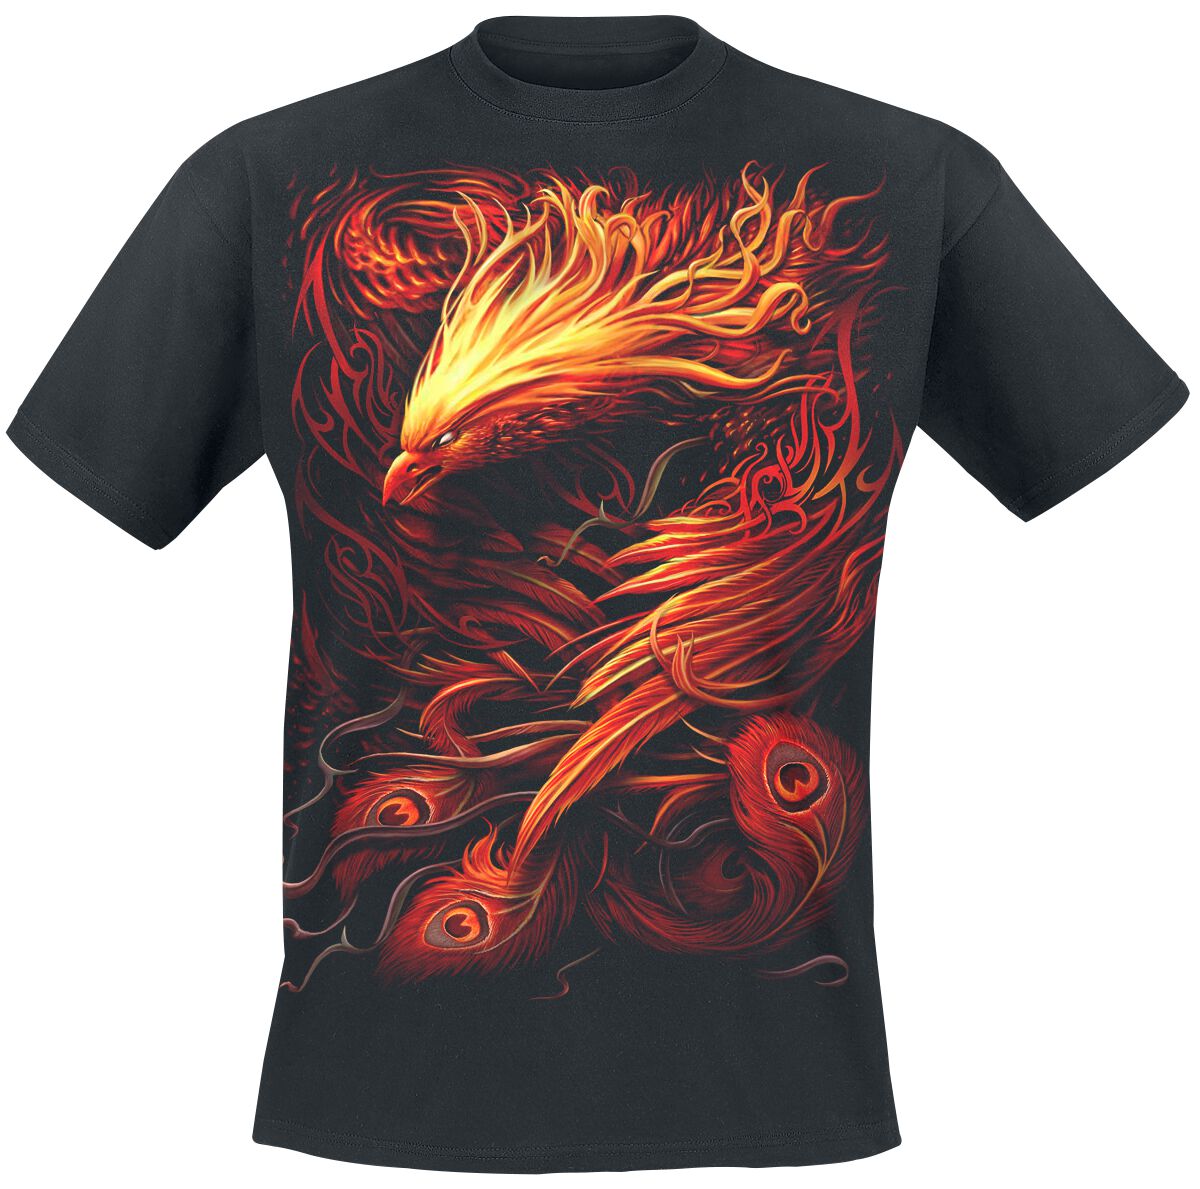 Spiral Phoenix Arisen T-Shirt schwarz in L